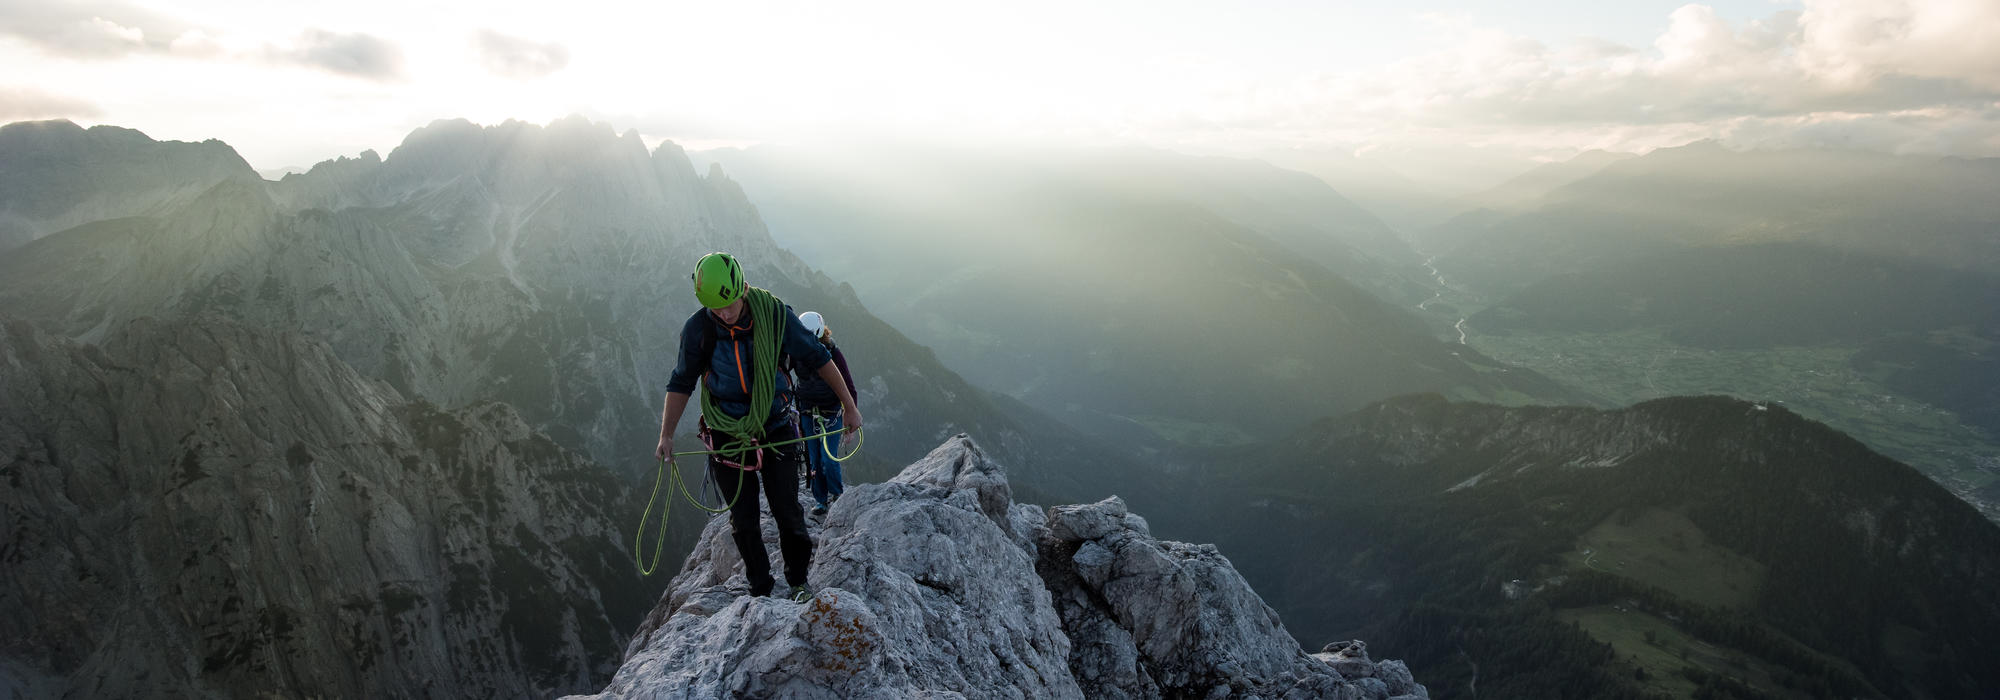 Alpine climbing, Alpenrautekamin, Lienz Dolomites, multi-pitch routes | © TVB Osttirol / Sam Strauss Fotographie